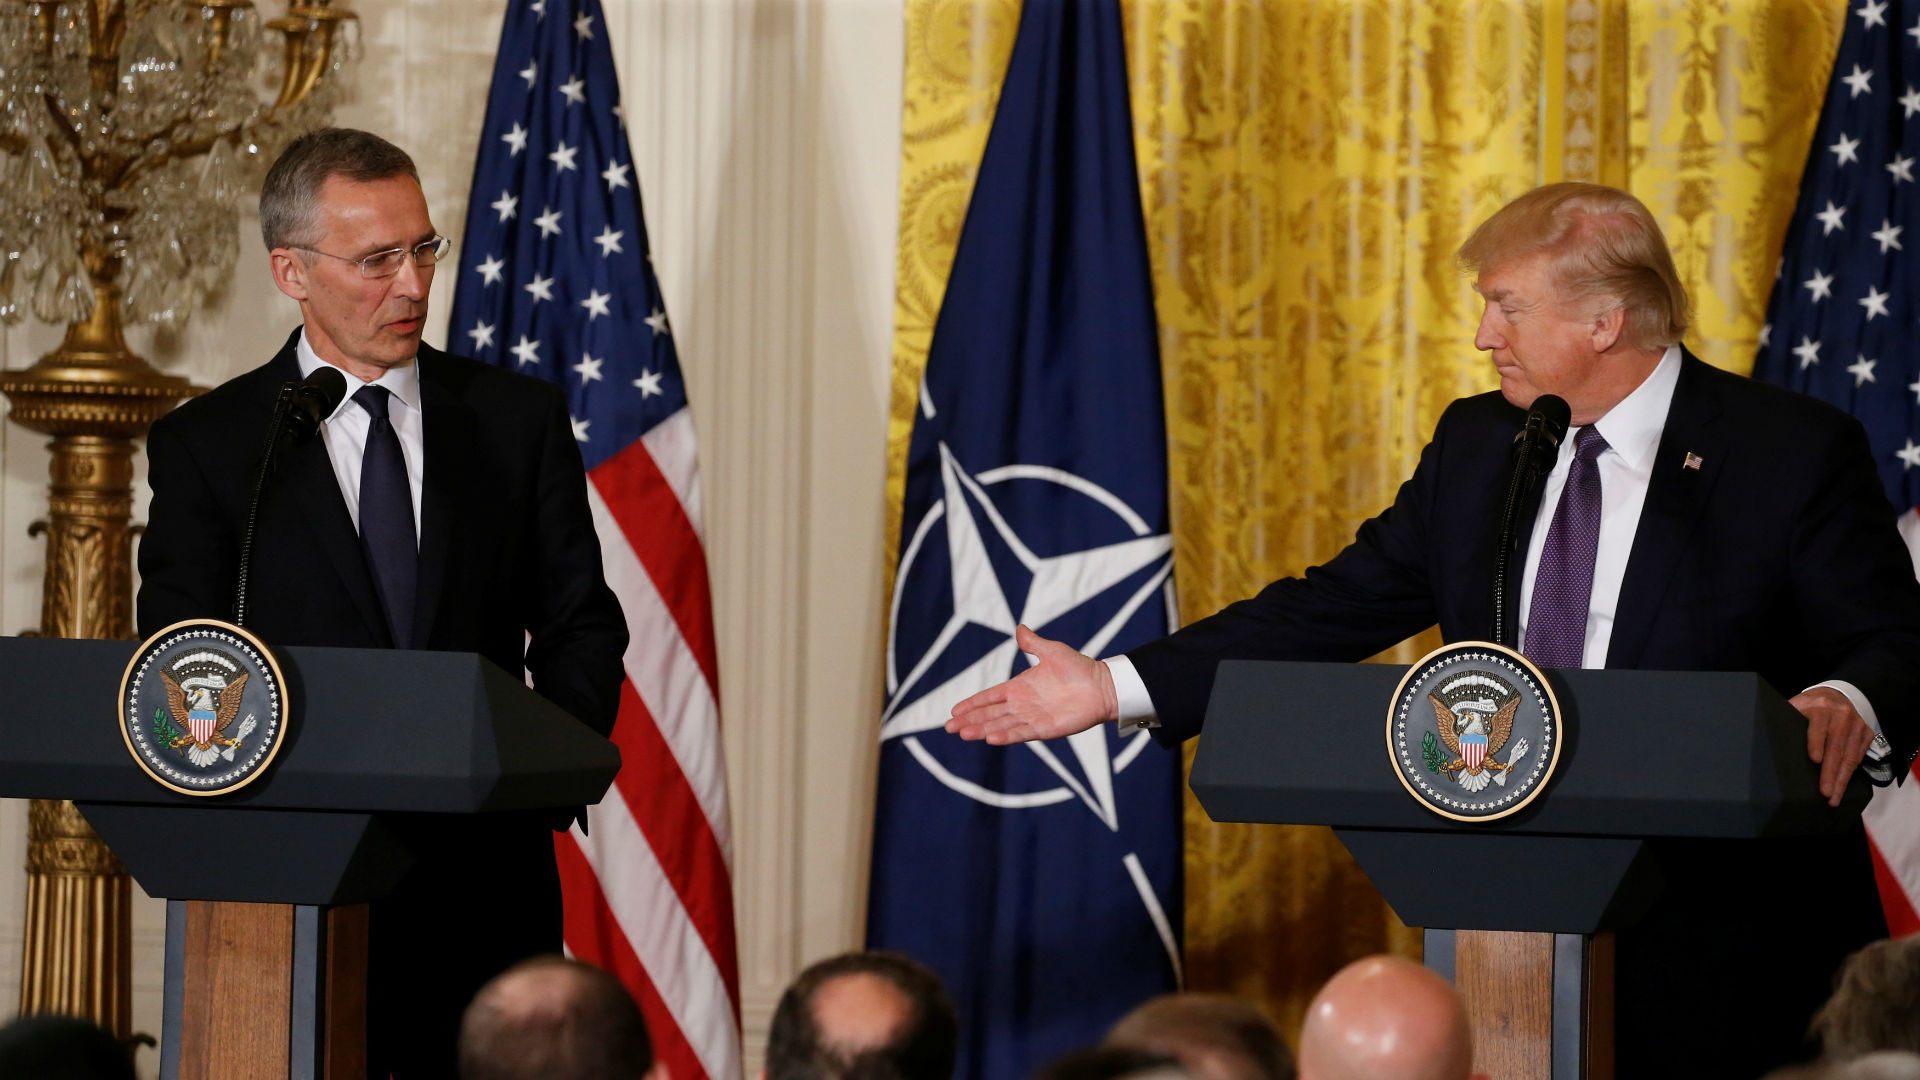 Trump se desdice de sus críticas y llama a la OTAN "nuestra alianza"